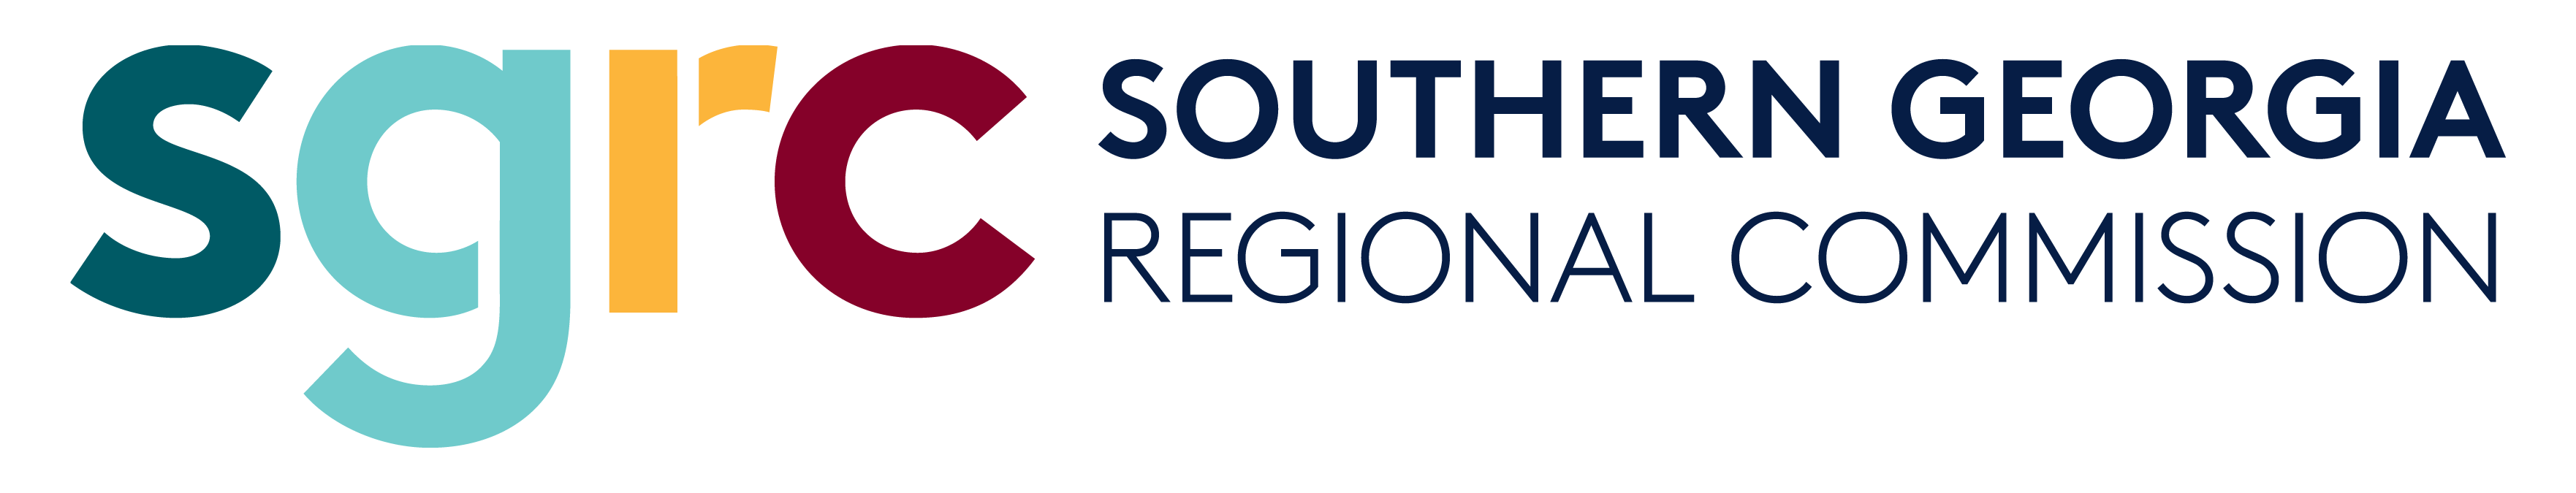 SGRC logo